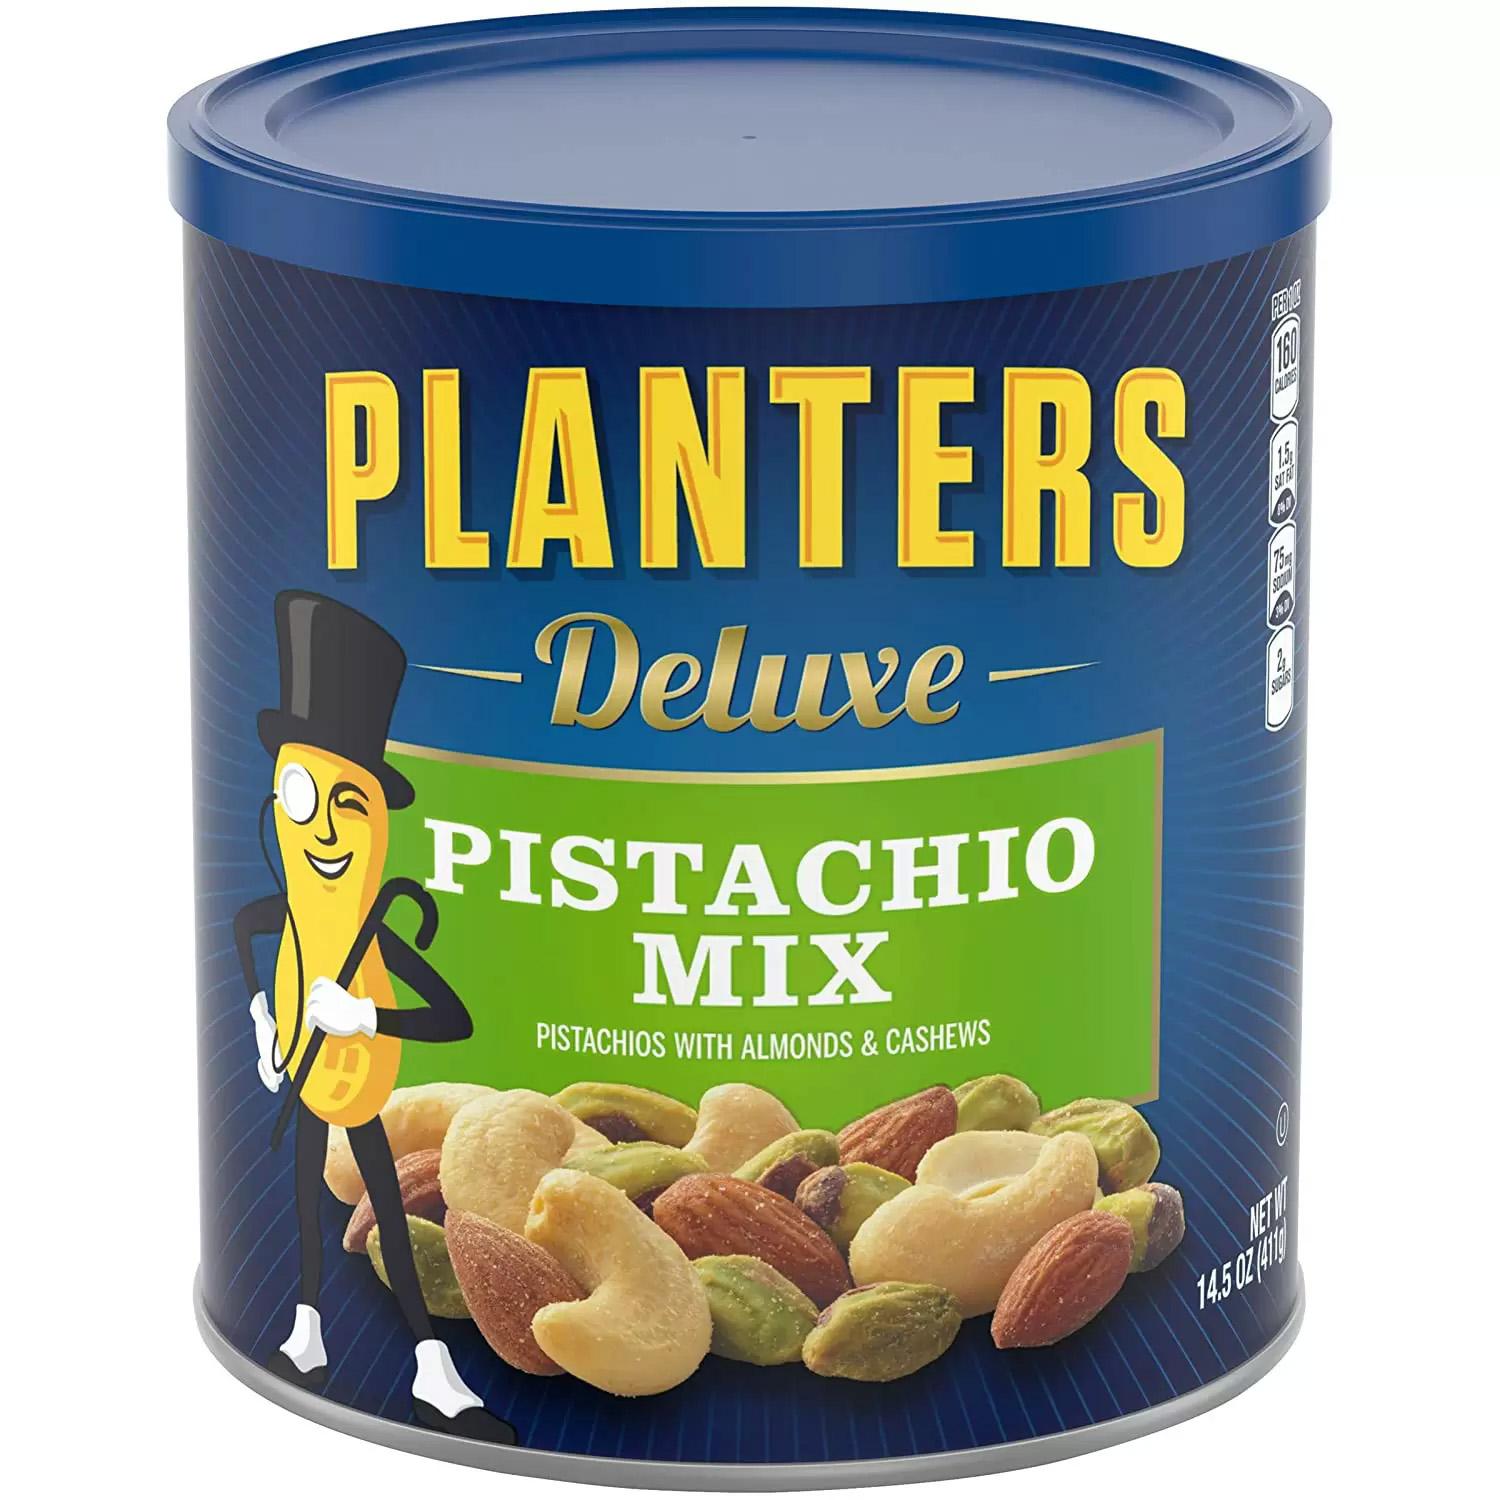 Planters Deluxe 14.5oz Pistachio Mix for $7.09